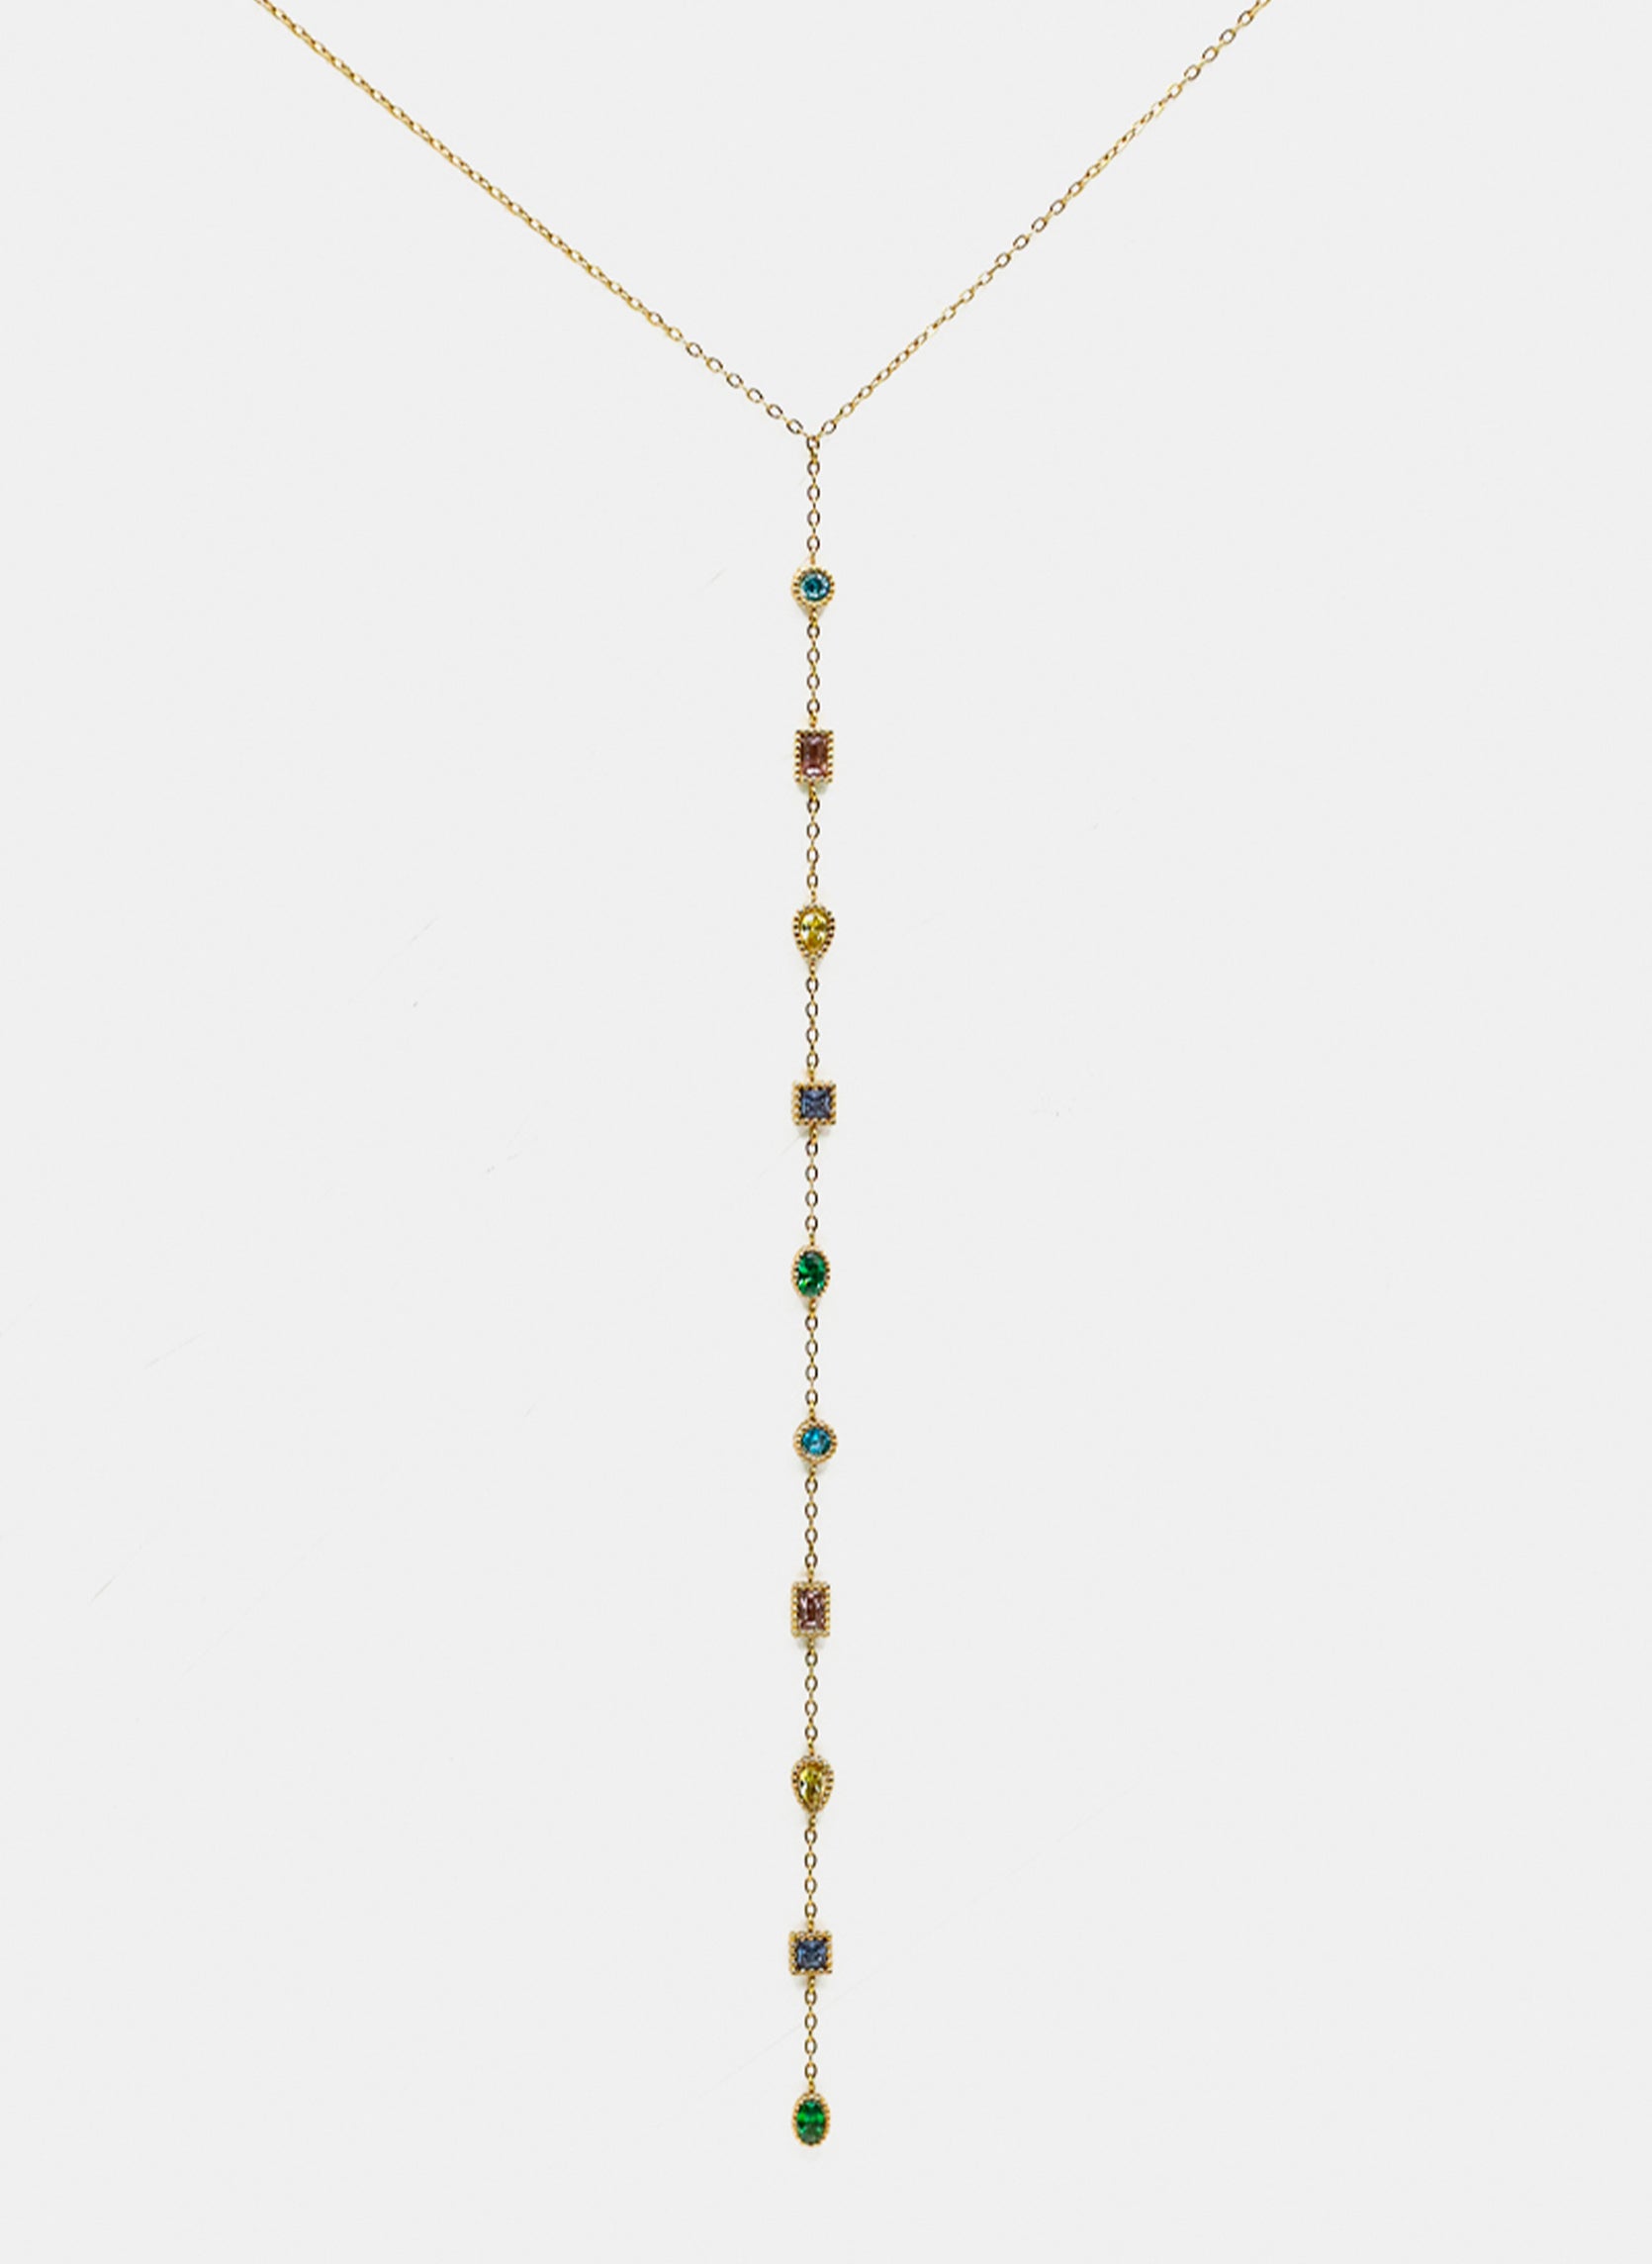 Chain necklace Tara